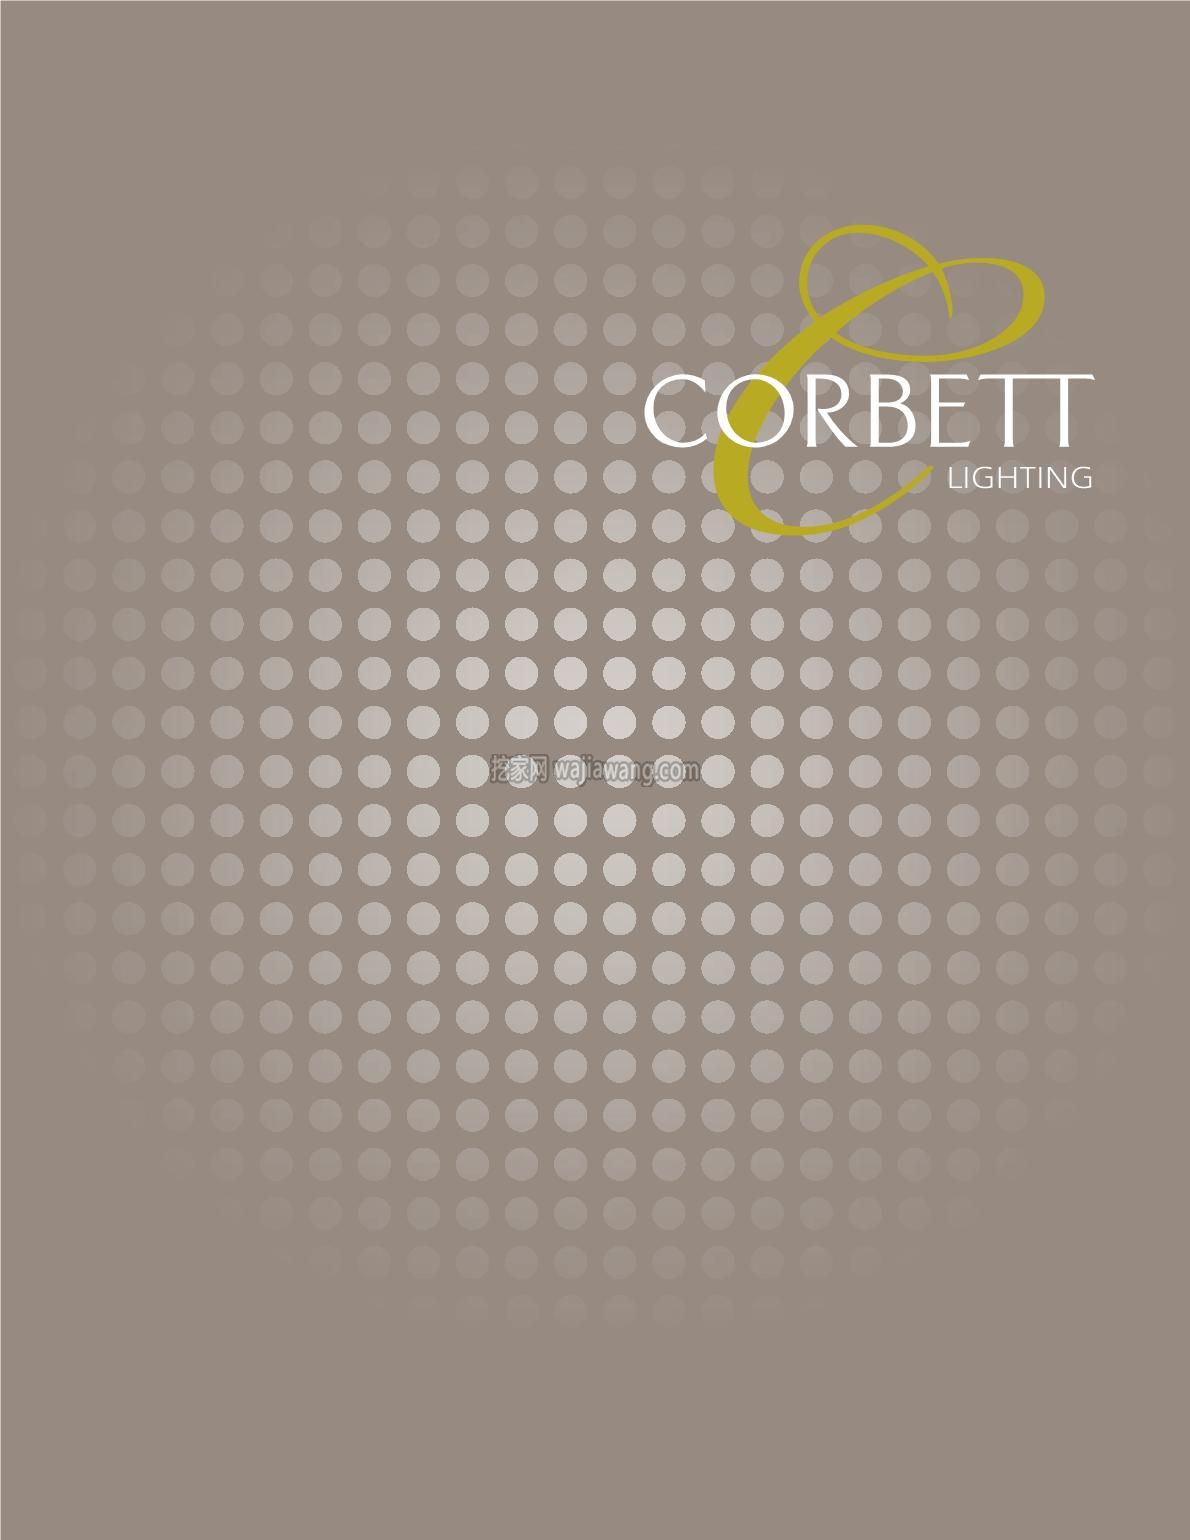 灯饰设计 创意吊灯设计 Corbett 2016(图)